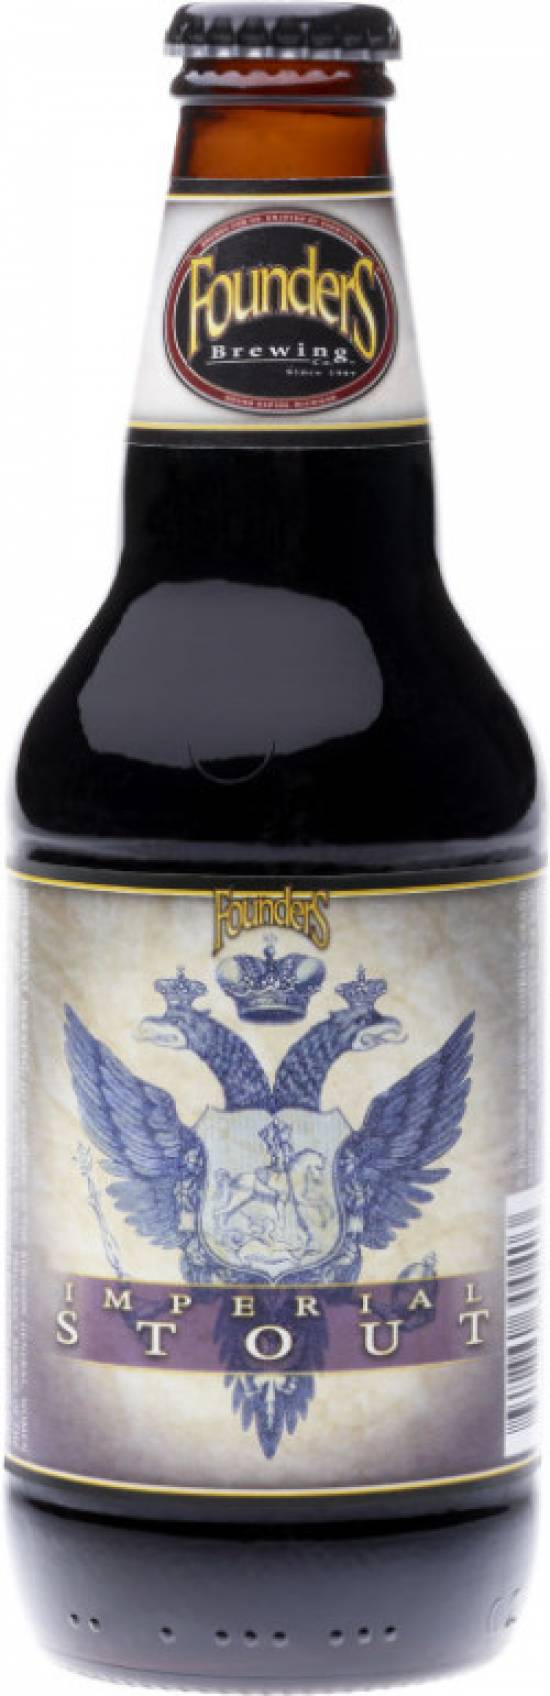 пиво steam brew imperial stout темное фото 18